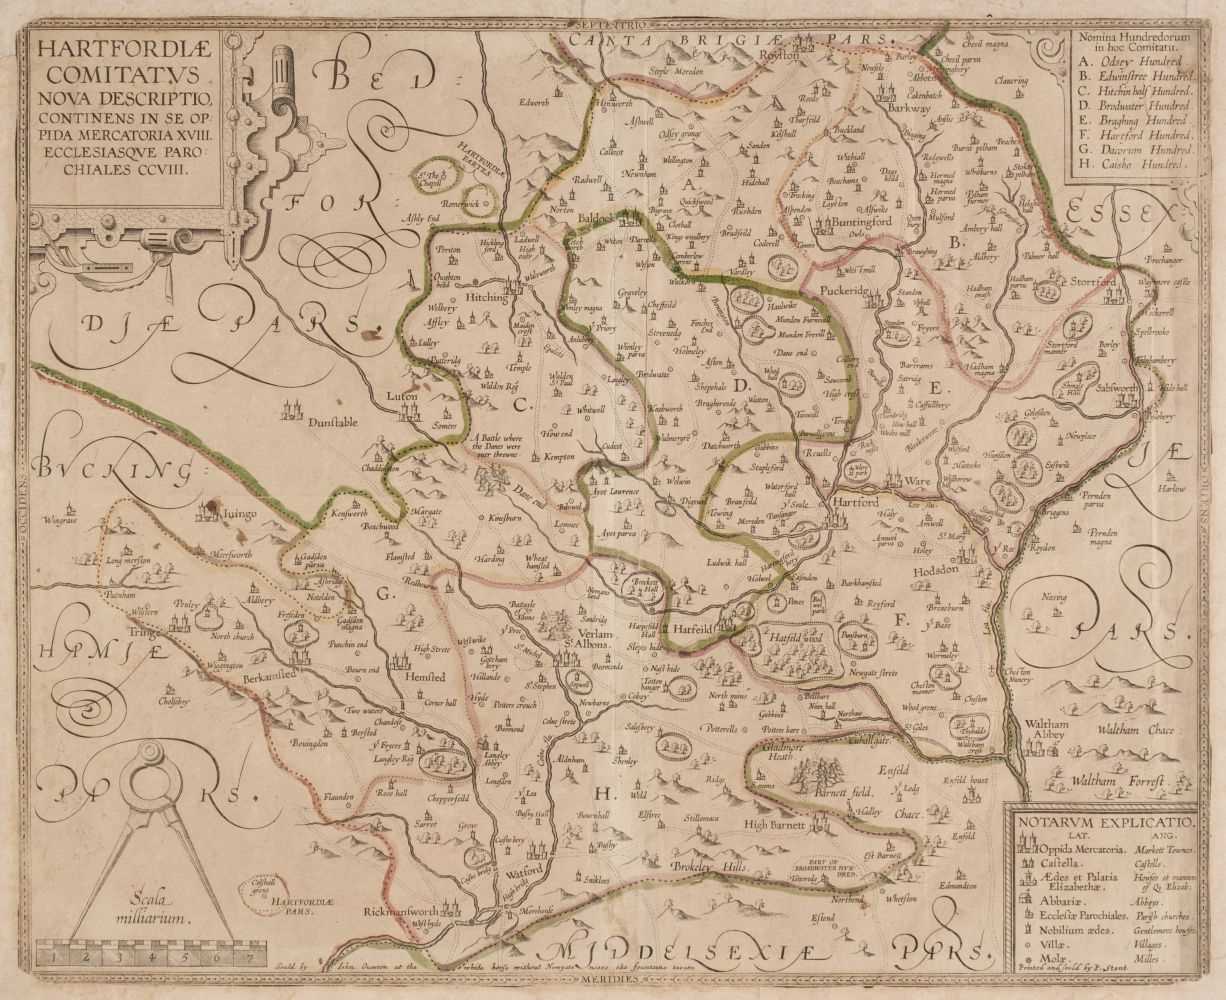 Lot 23 - Hertfordshire. Smith (William), Harfordiae Comitatus nova Descriptio..., 1670